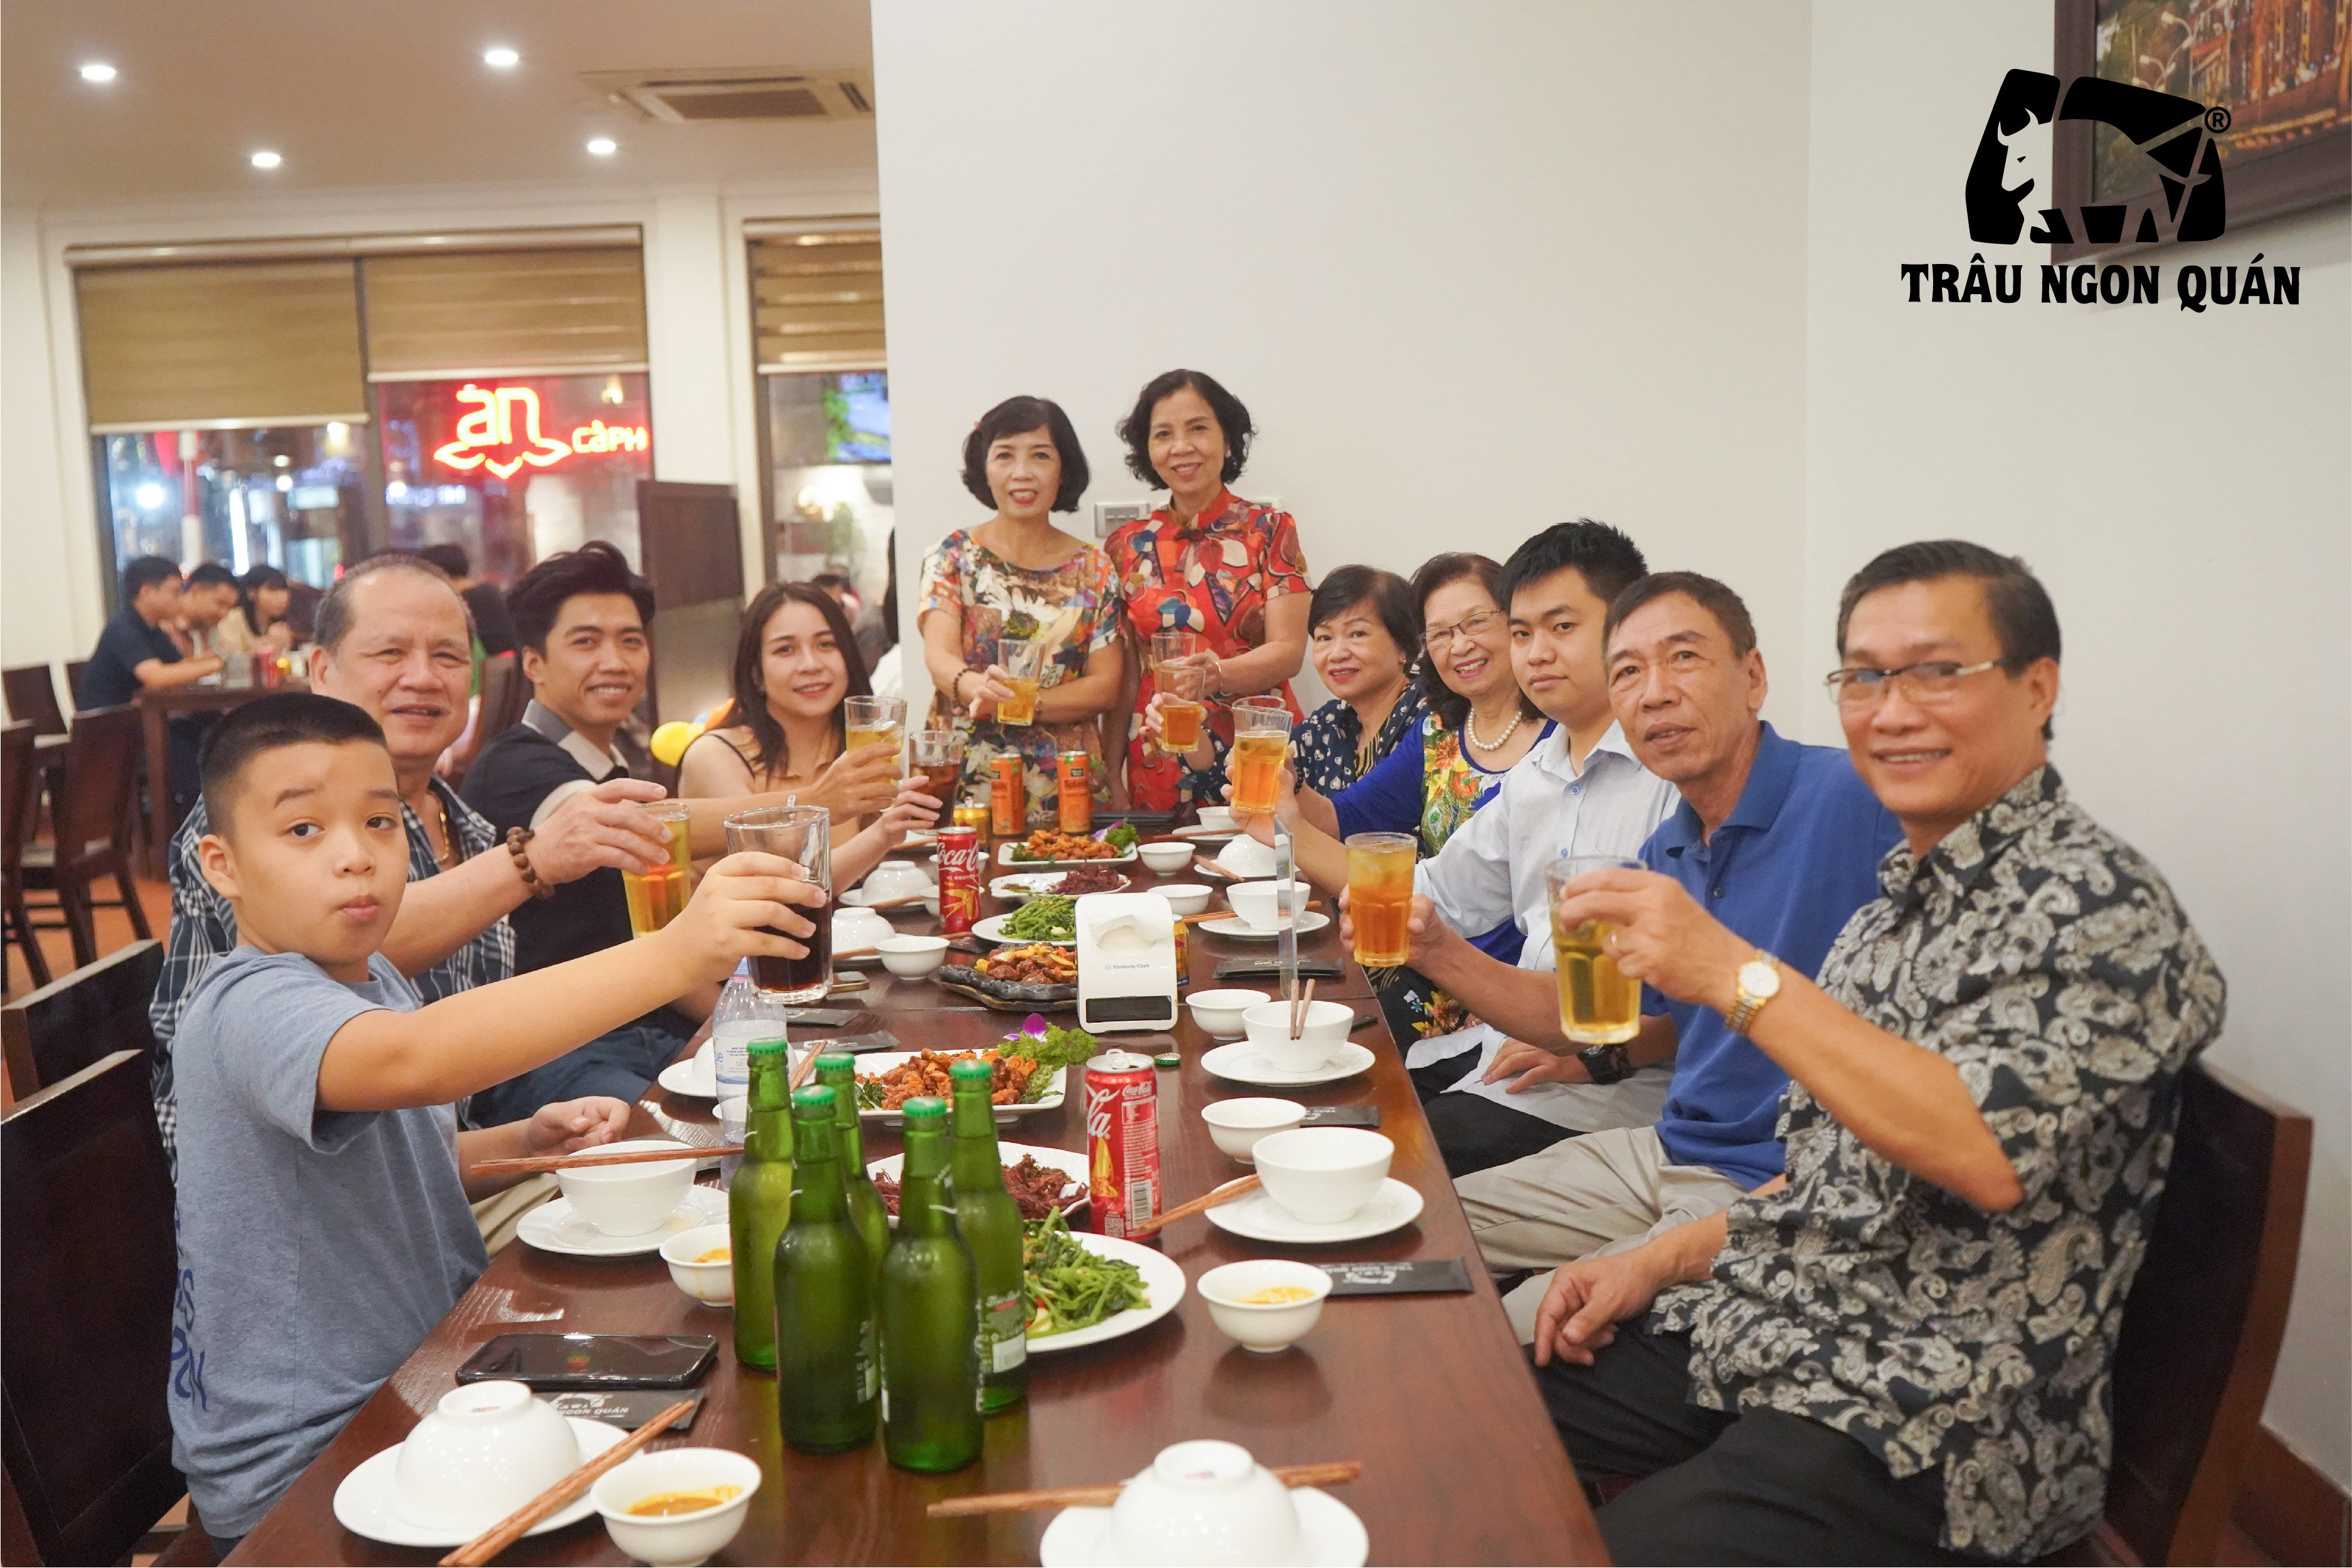 Hình ảnh đại gia đình đoàn kết đón tết tại Trâu Ngon Quán